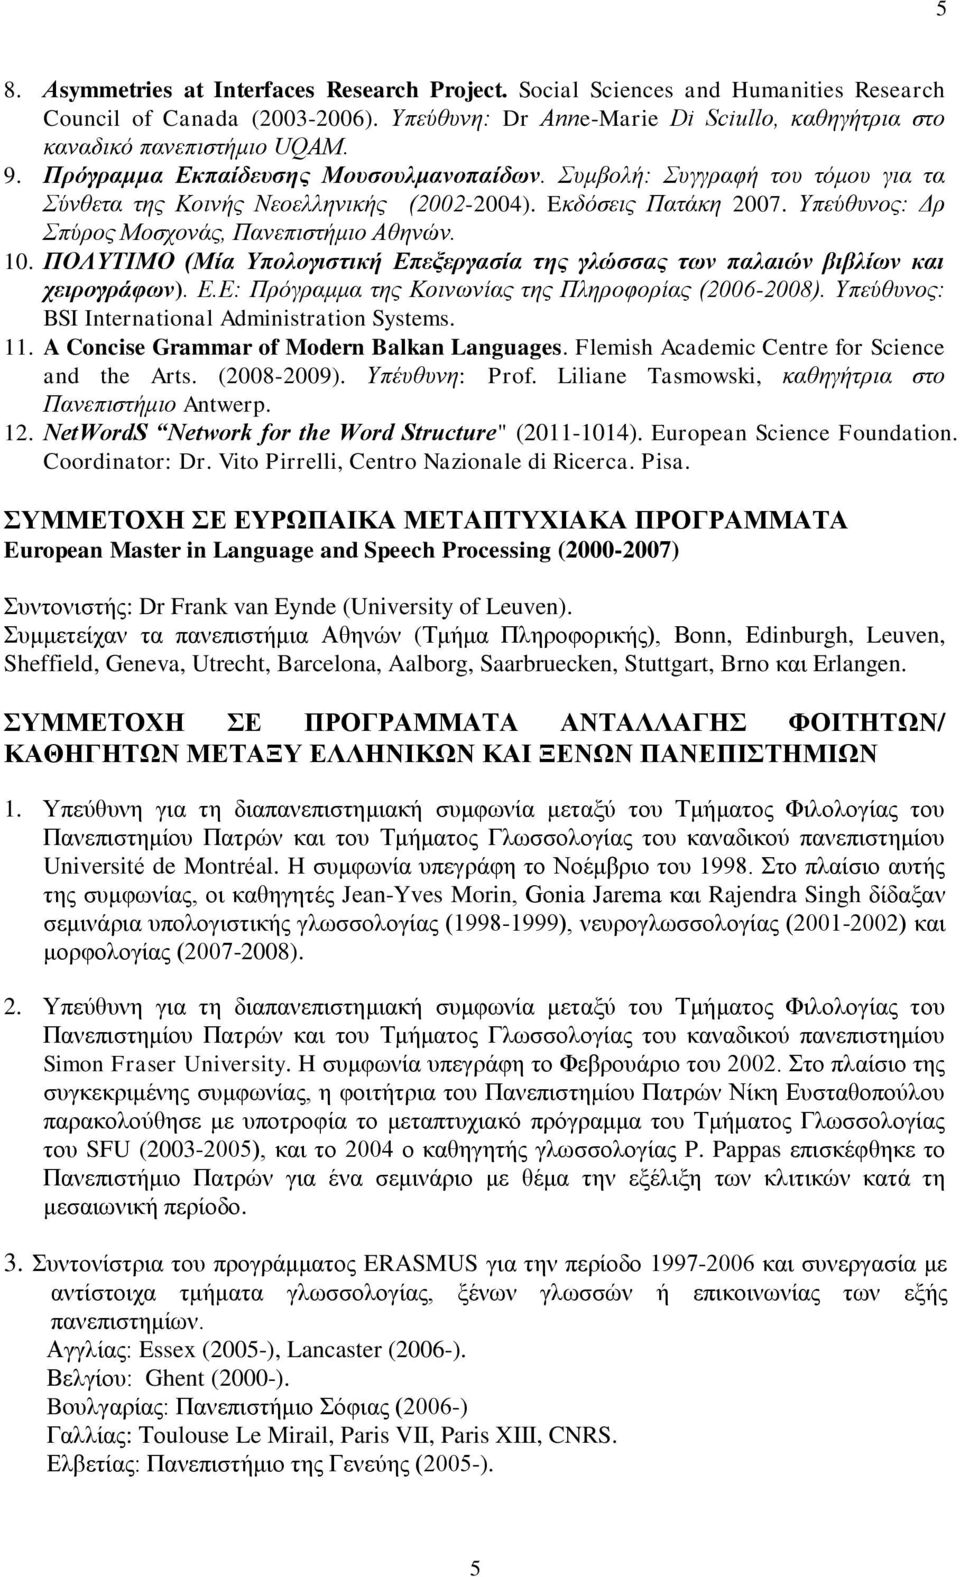 10. ΠΟΛΥΤΙΜΟ (Μία Υπολογιστική Επεξεργασία της γλώσσας των παλαιών βιβλίων και χειρογράφων). E.Ε: Πρόγραμμα της Κοινωνίας της Πληροφορίας (2006-2008).